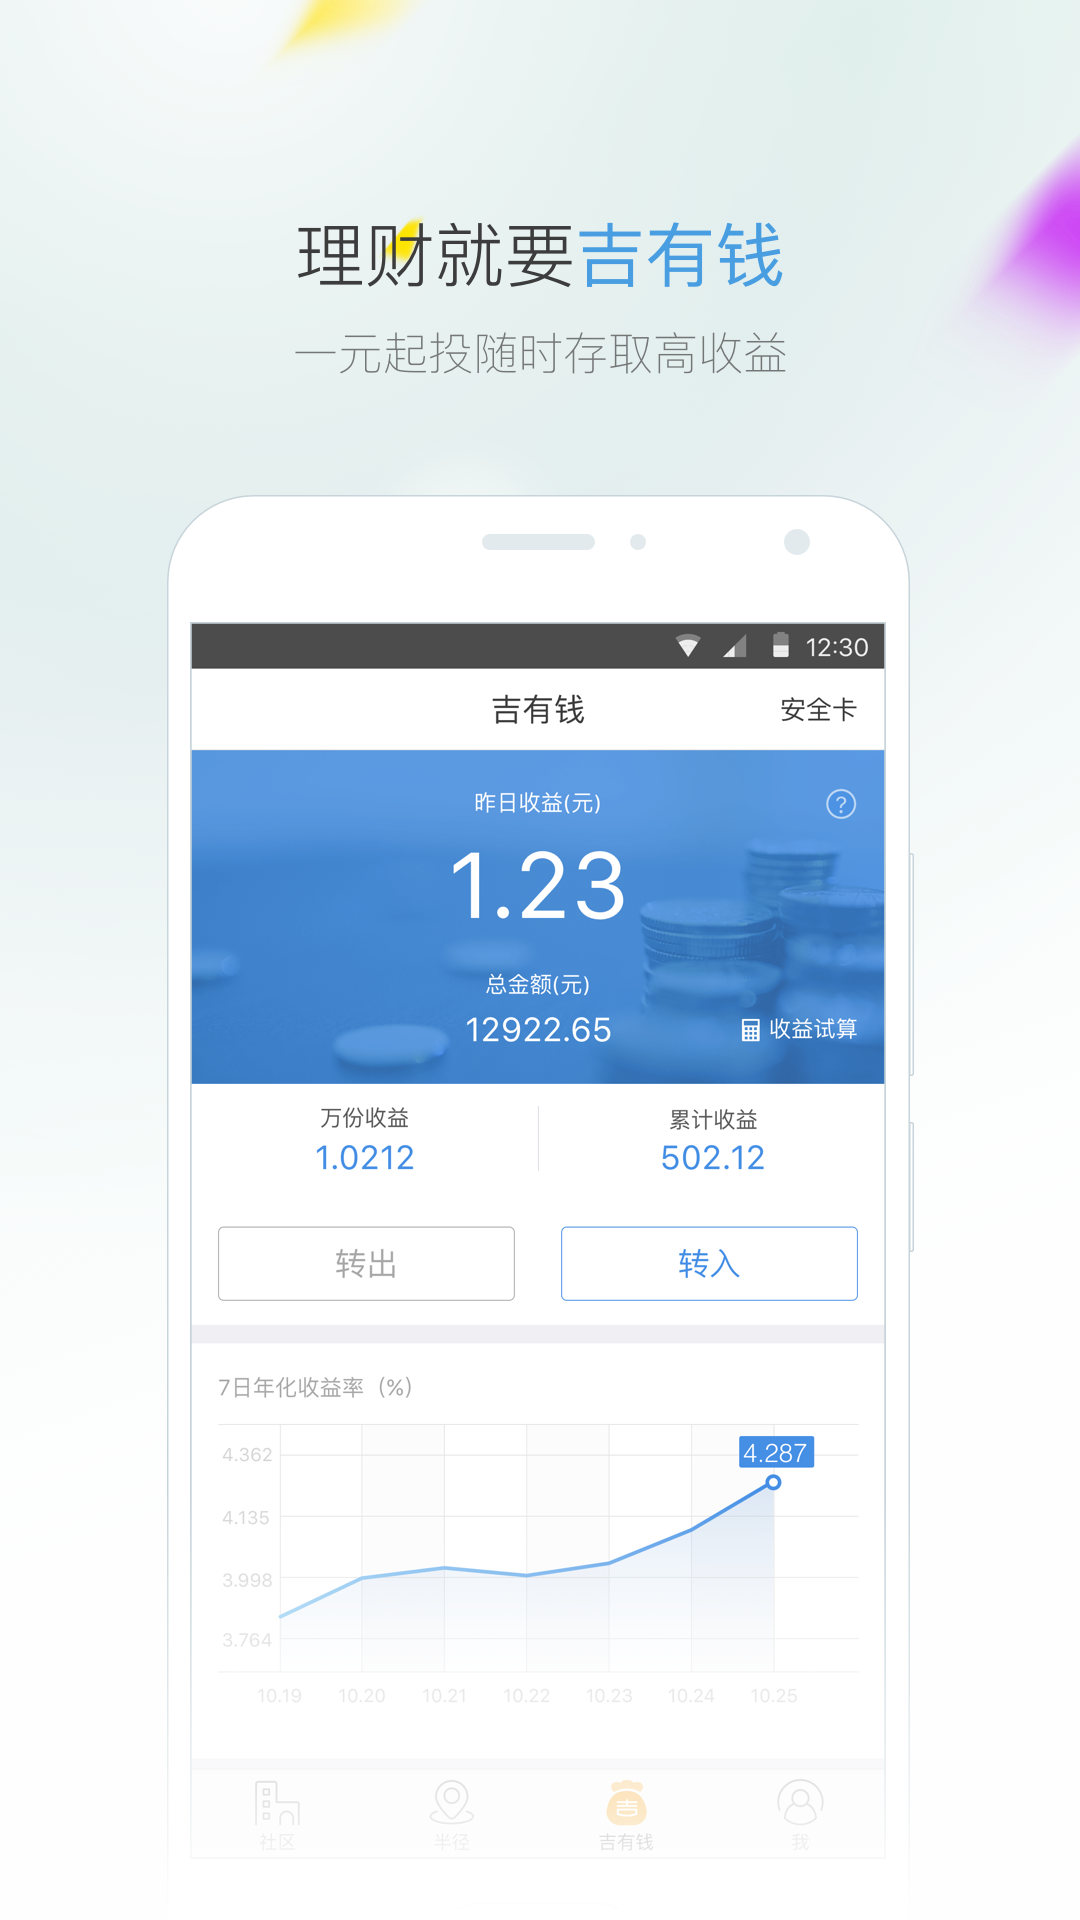 榴莲社区app平台下载 榴莲成视频破解免费下载